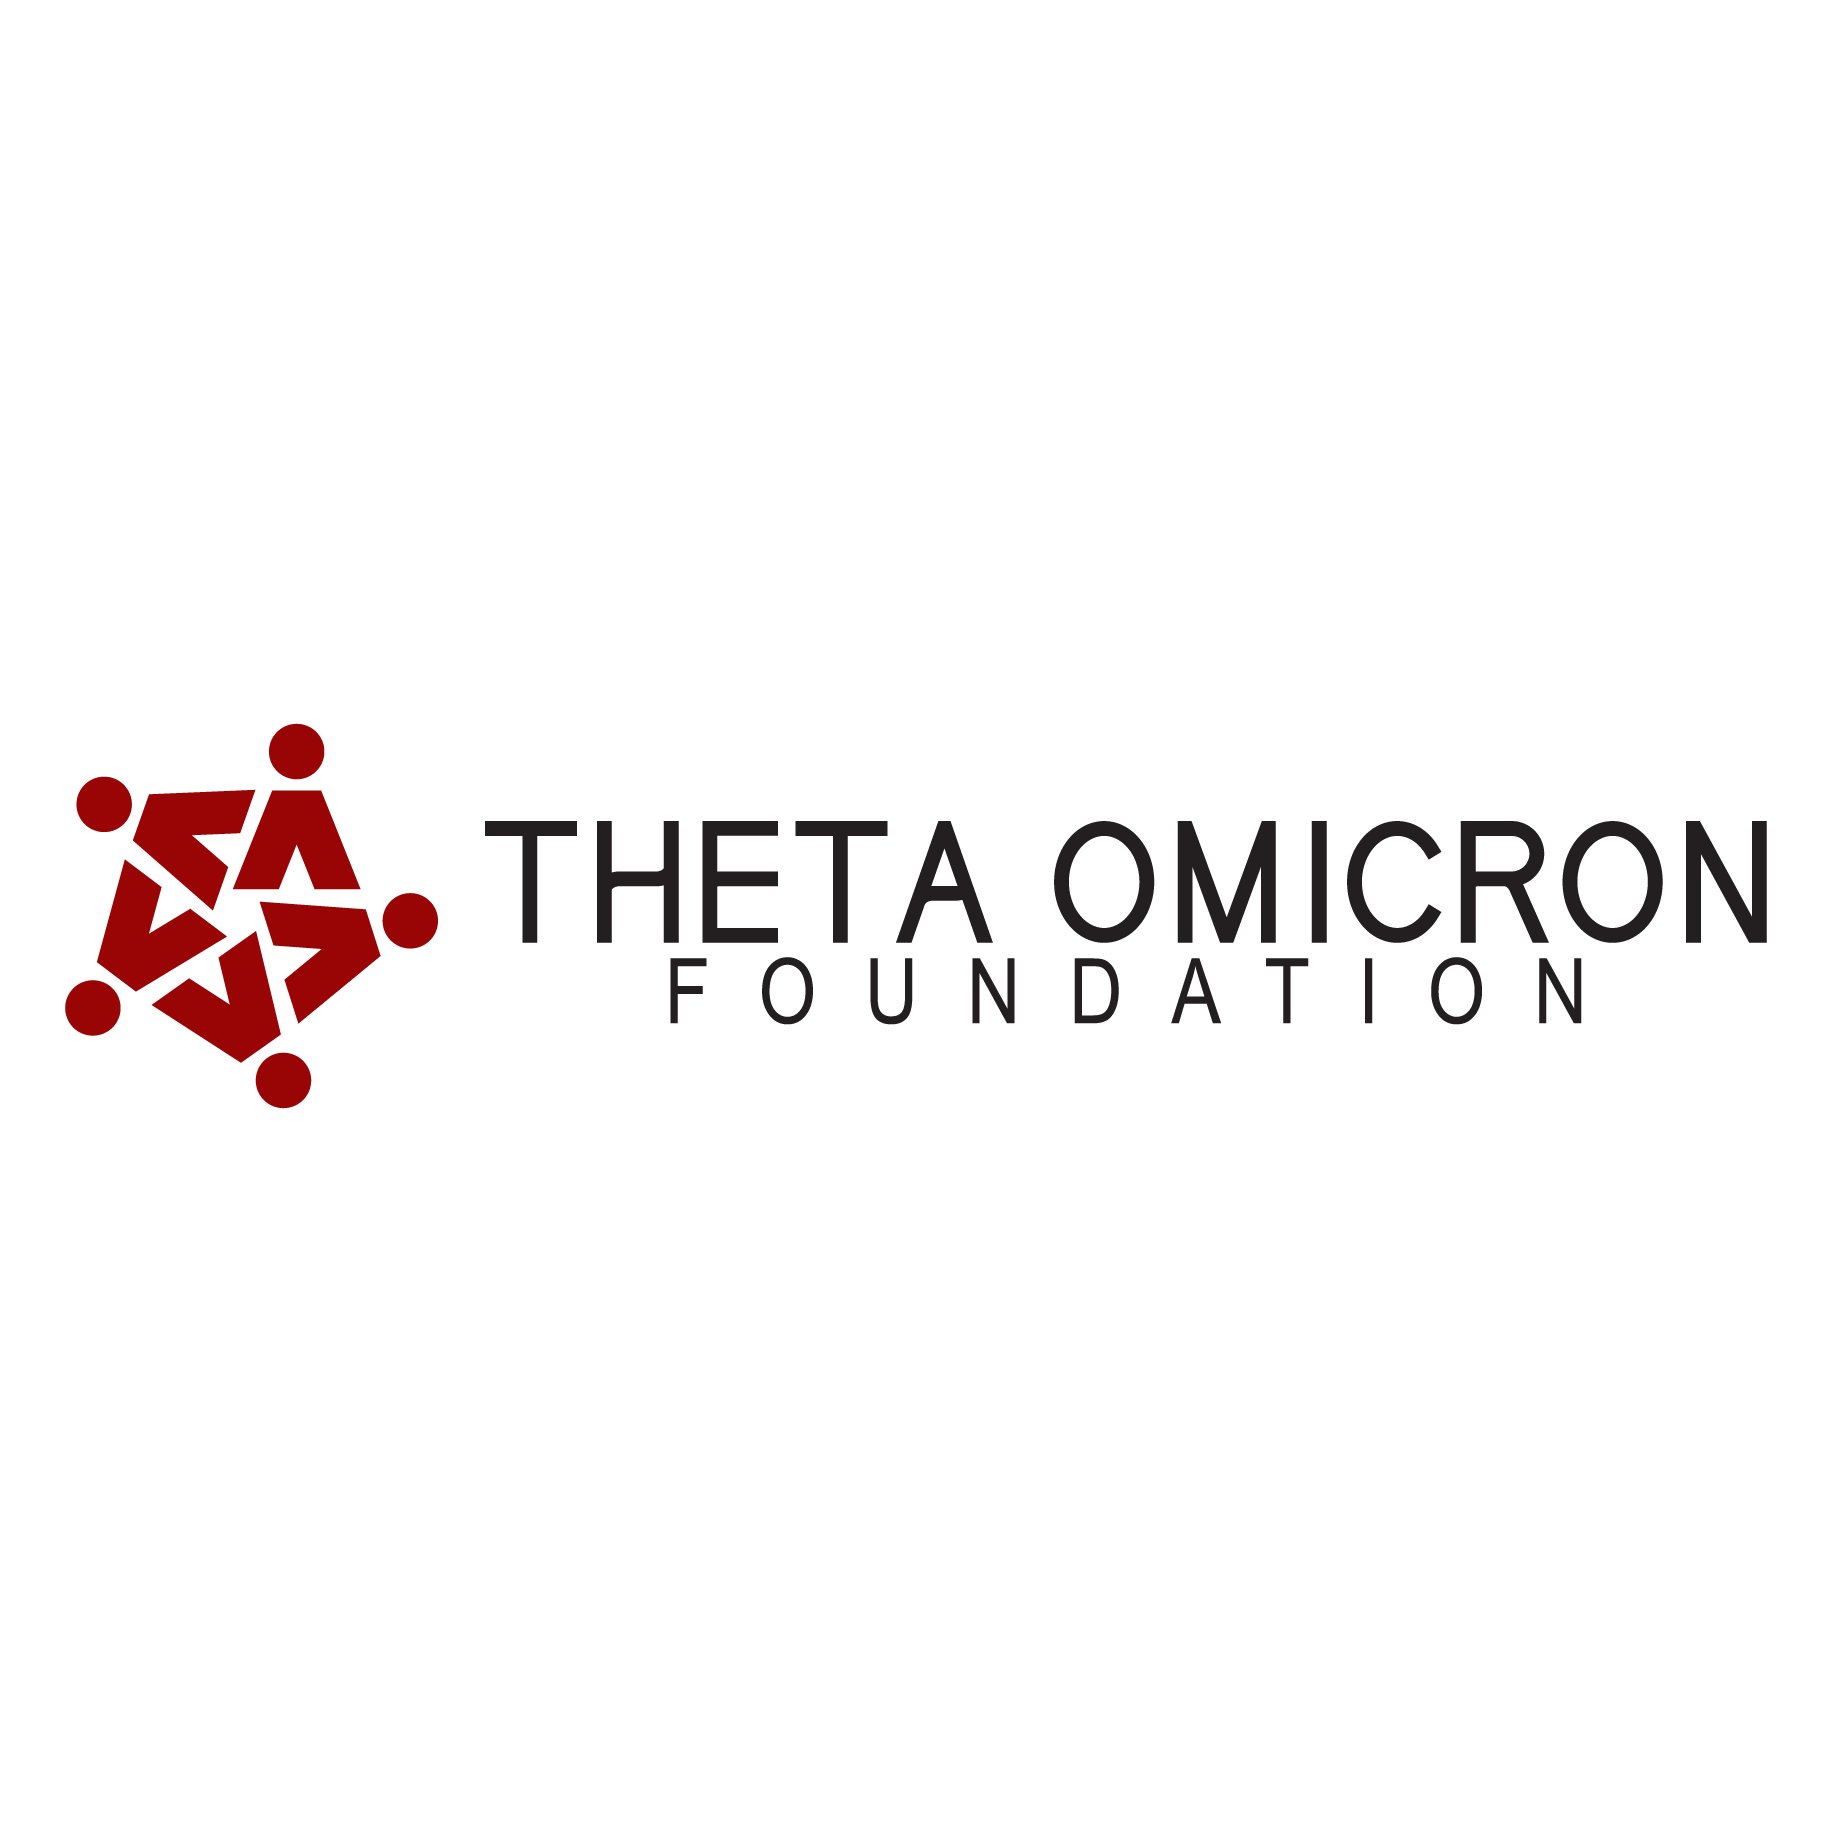 Theta Omicron Foundation